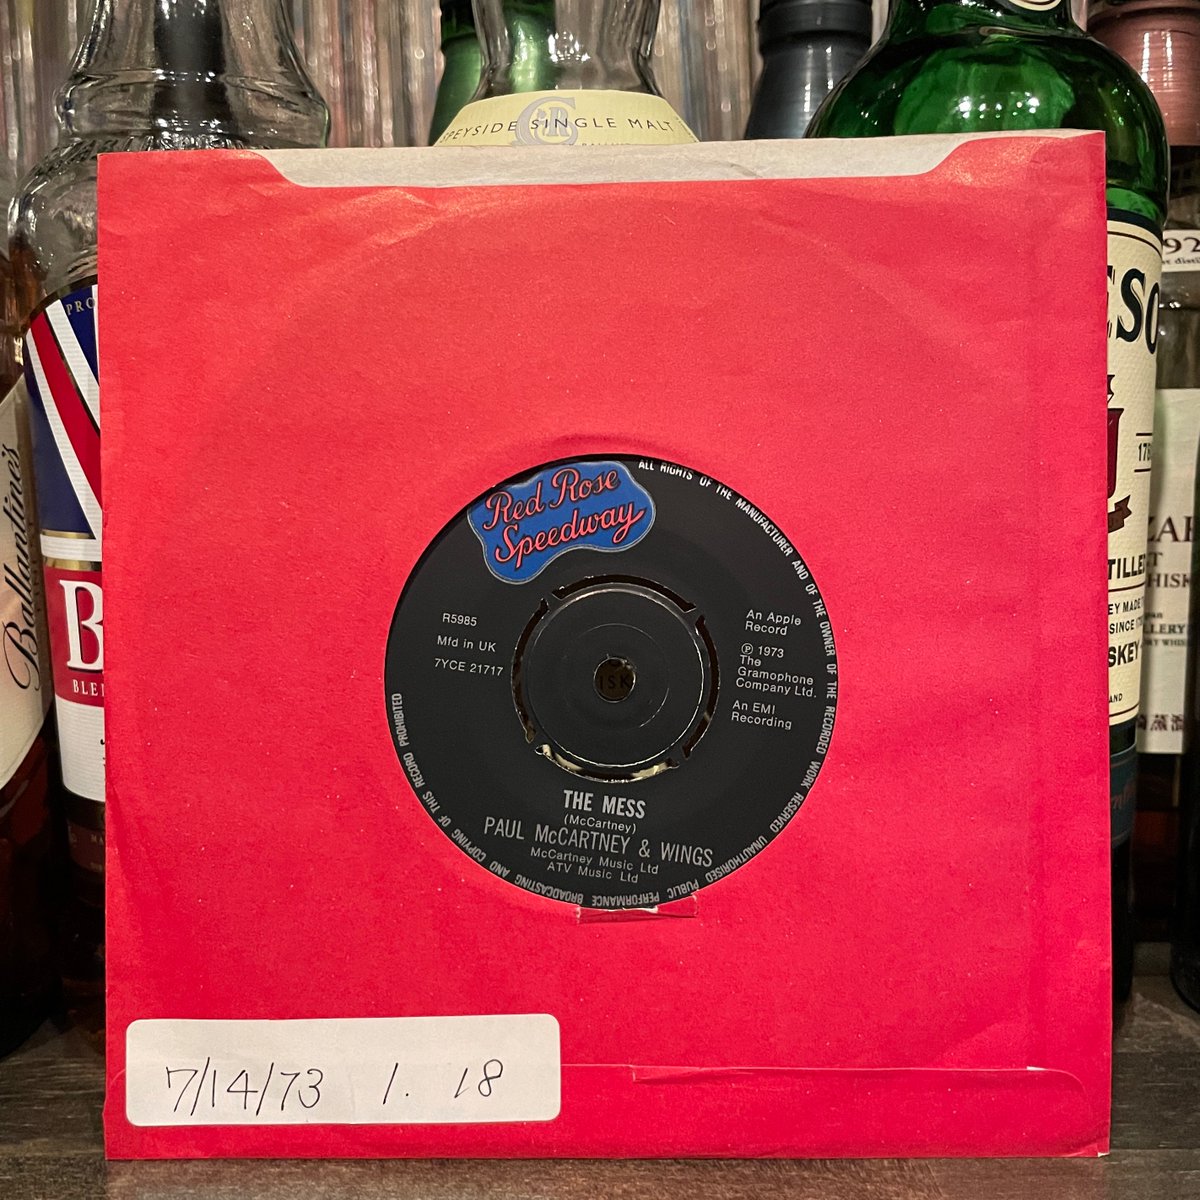 ほな7いこか
PAUL McCARTNEY & WINGS / My Love [’73  Apple Records --- R 5985]　　　
#PaulMcCartney  #wings  #RedRoseSpeedway  #MyLove  #LindaMcCartney  #DennyLaine  #HenryMcCullough  #DennySeiwell  #vinylbar  #musicbar  #レコードバー  #mhc29032023
youtube.com/watch?v=vx5Qxo…